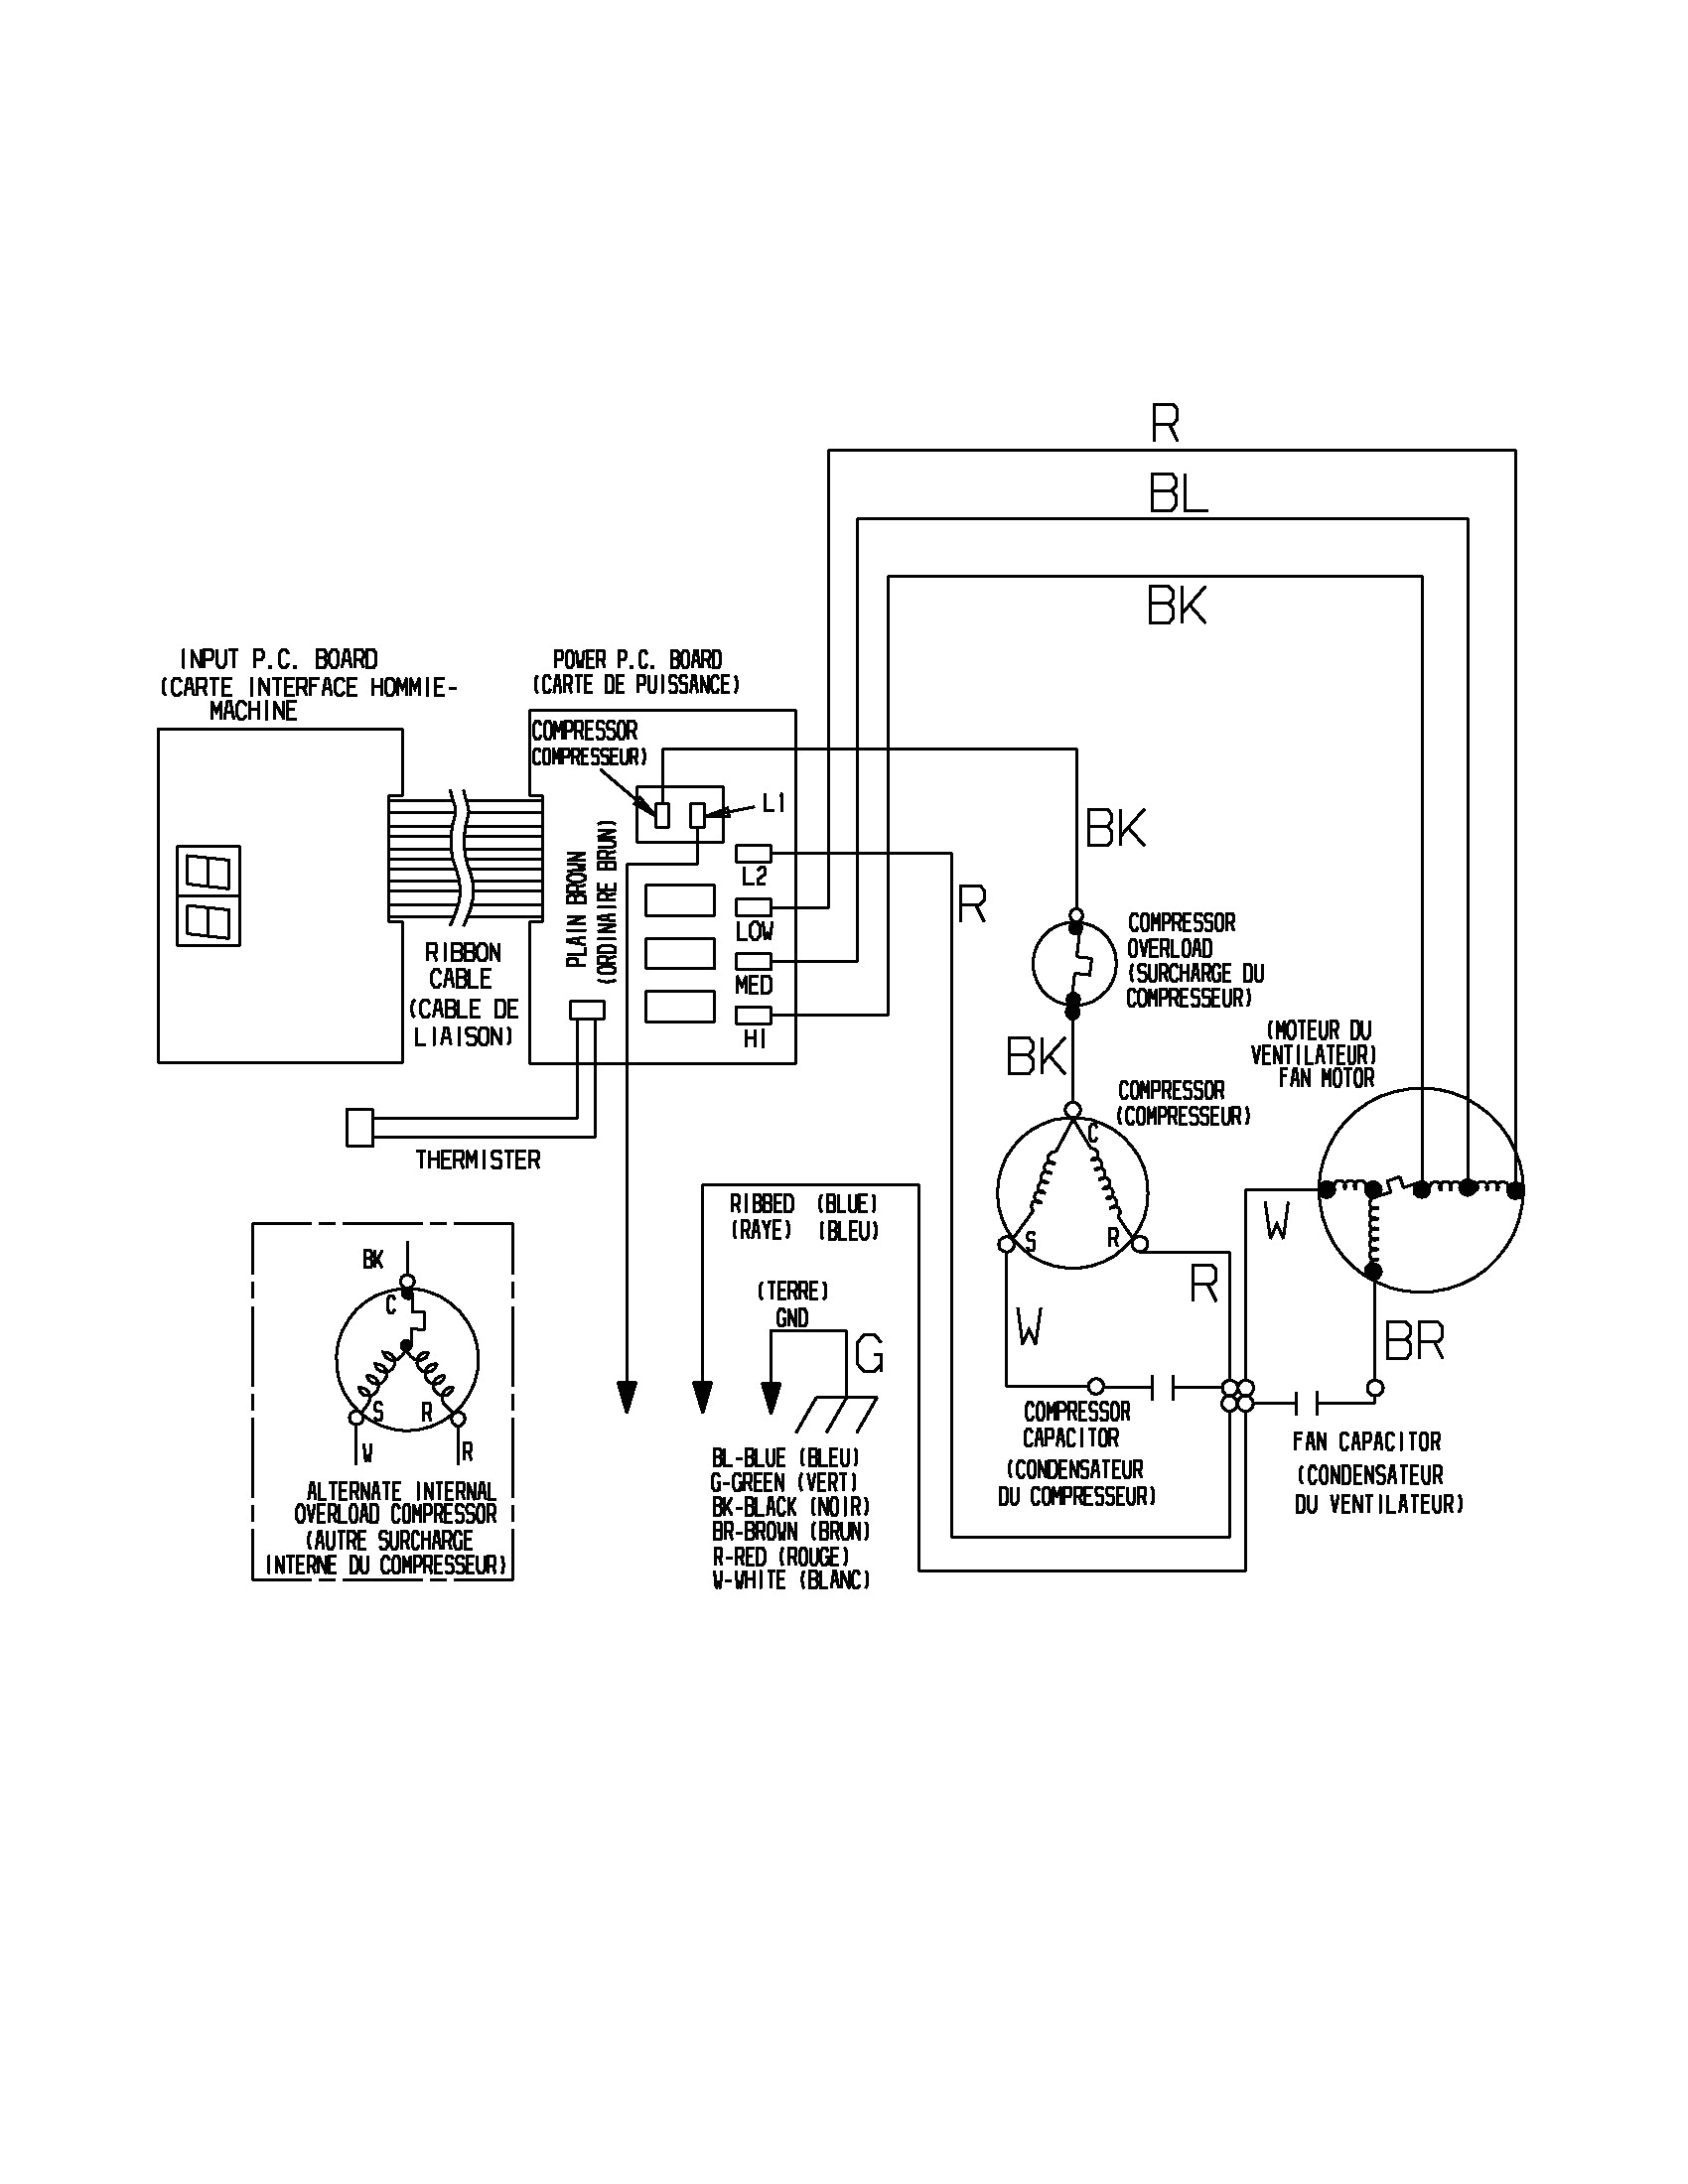 window ac schematic wiring diagram centrewindow ac plug wiring diagram wiring diagrams konsult